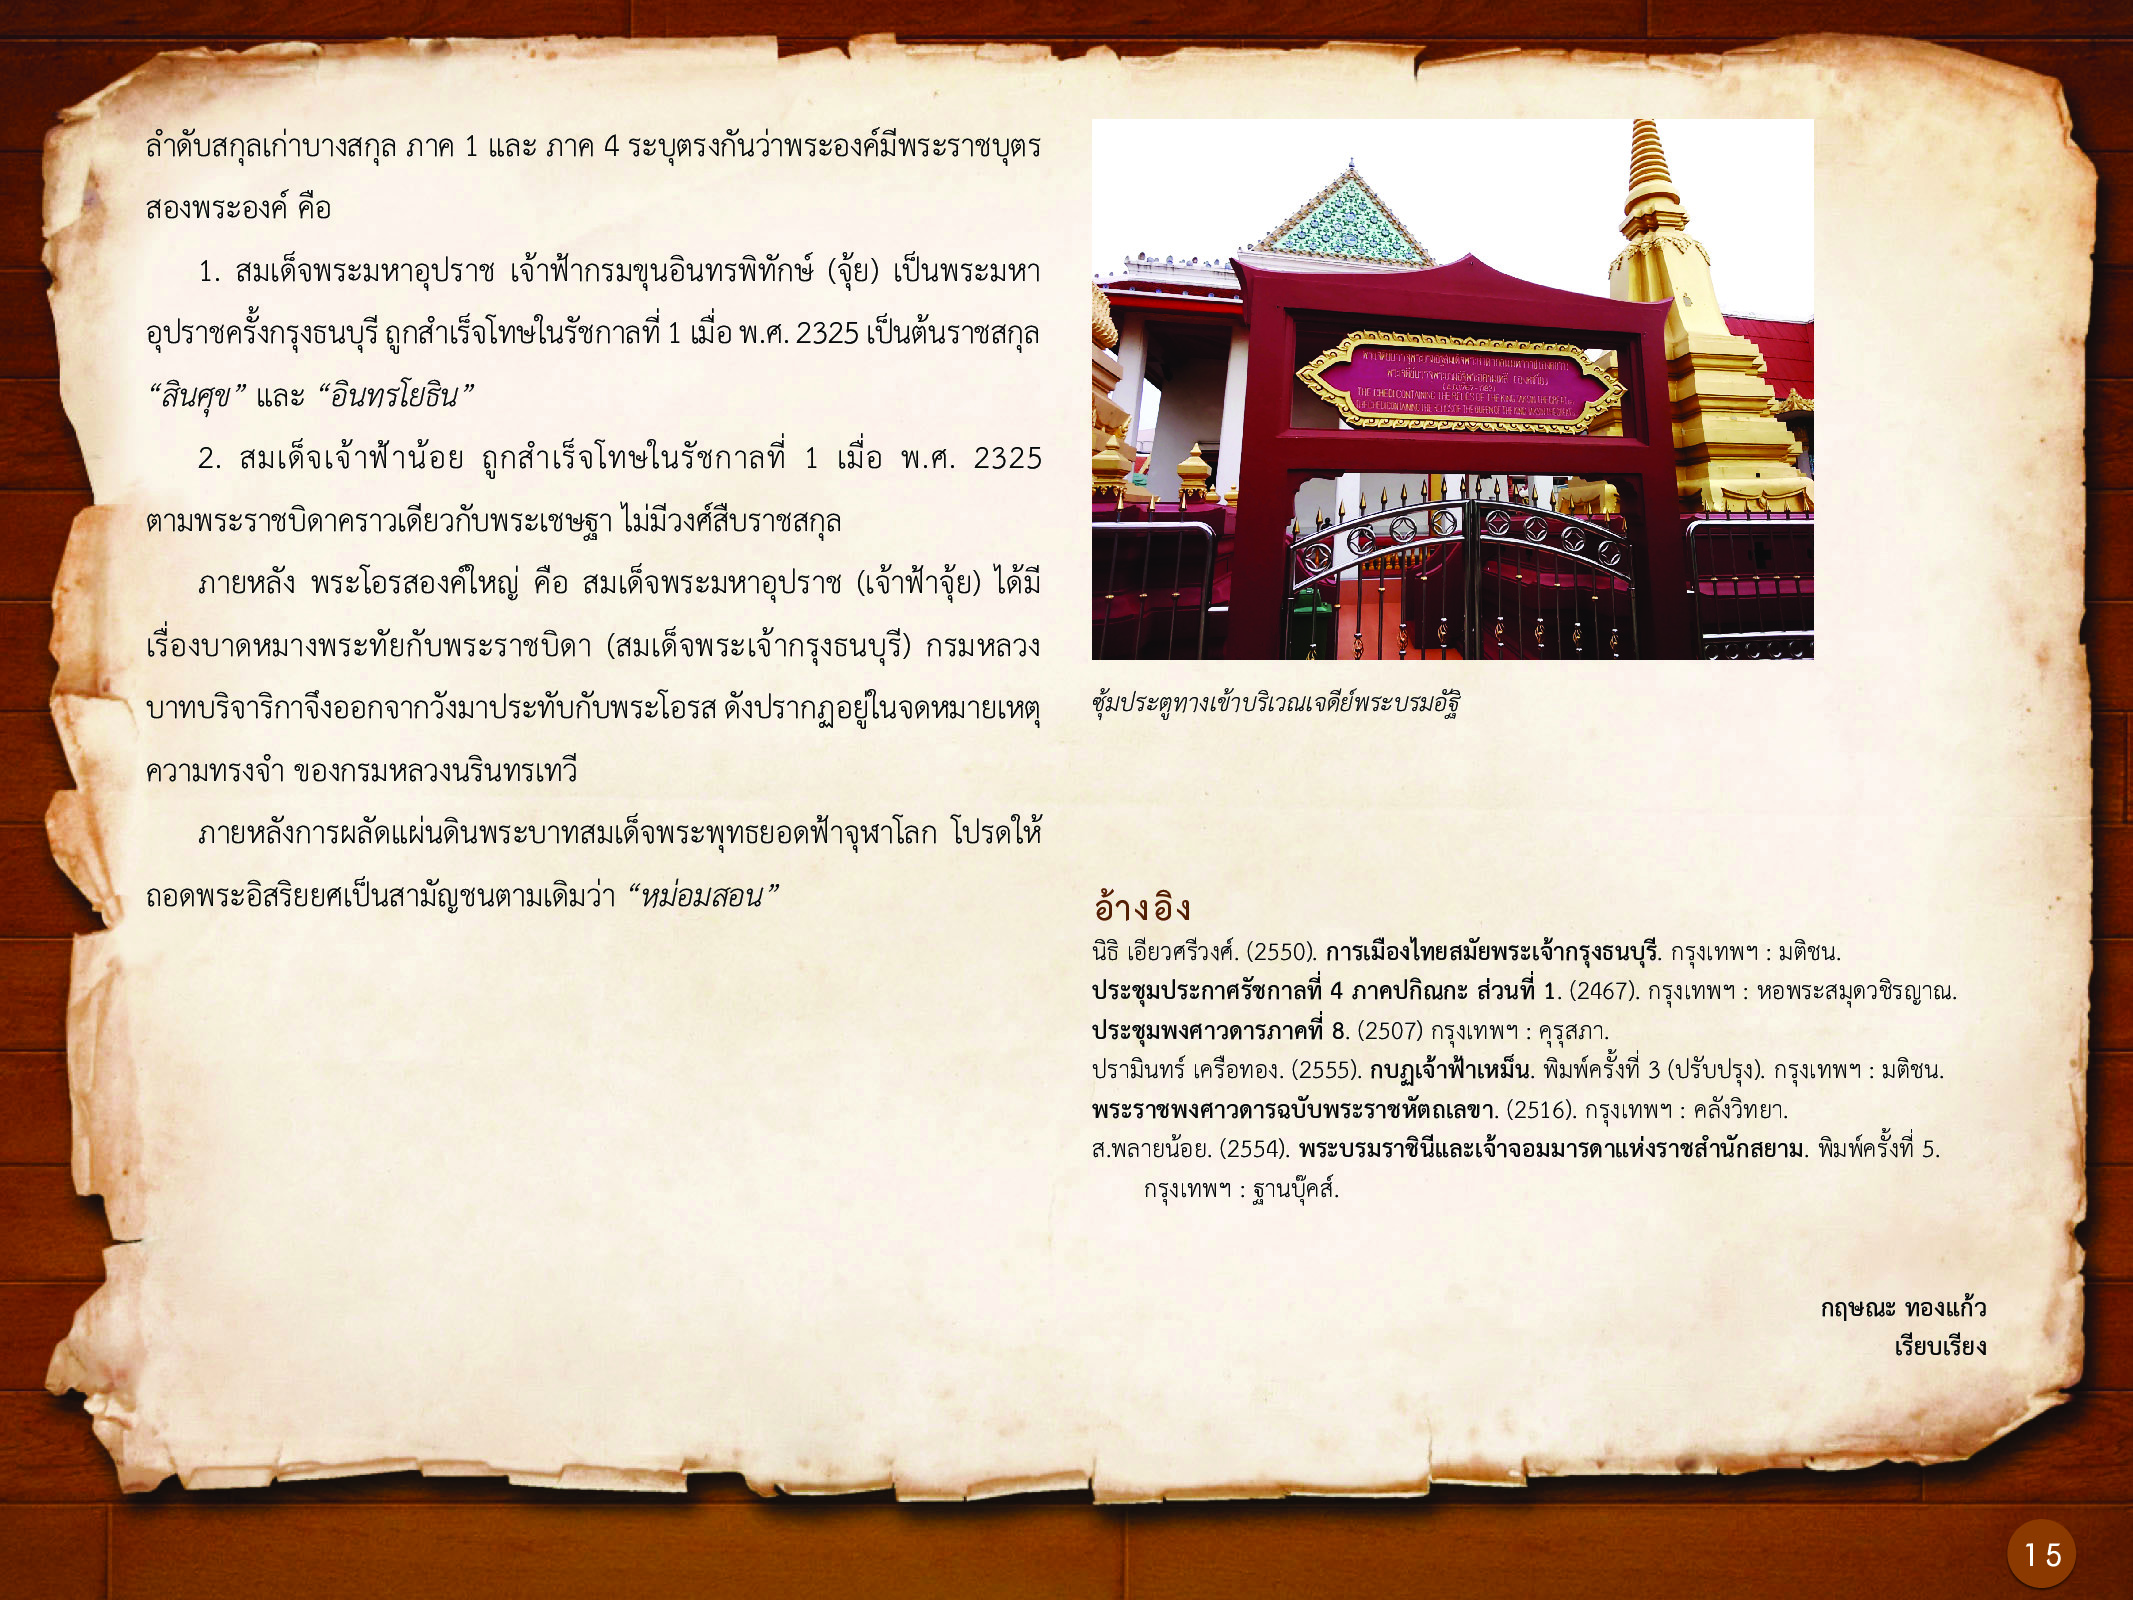 ประวัติศาสตร์กรุงธนบุรี ./images/history_dhonburi/15.jpg